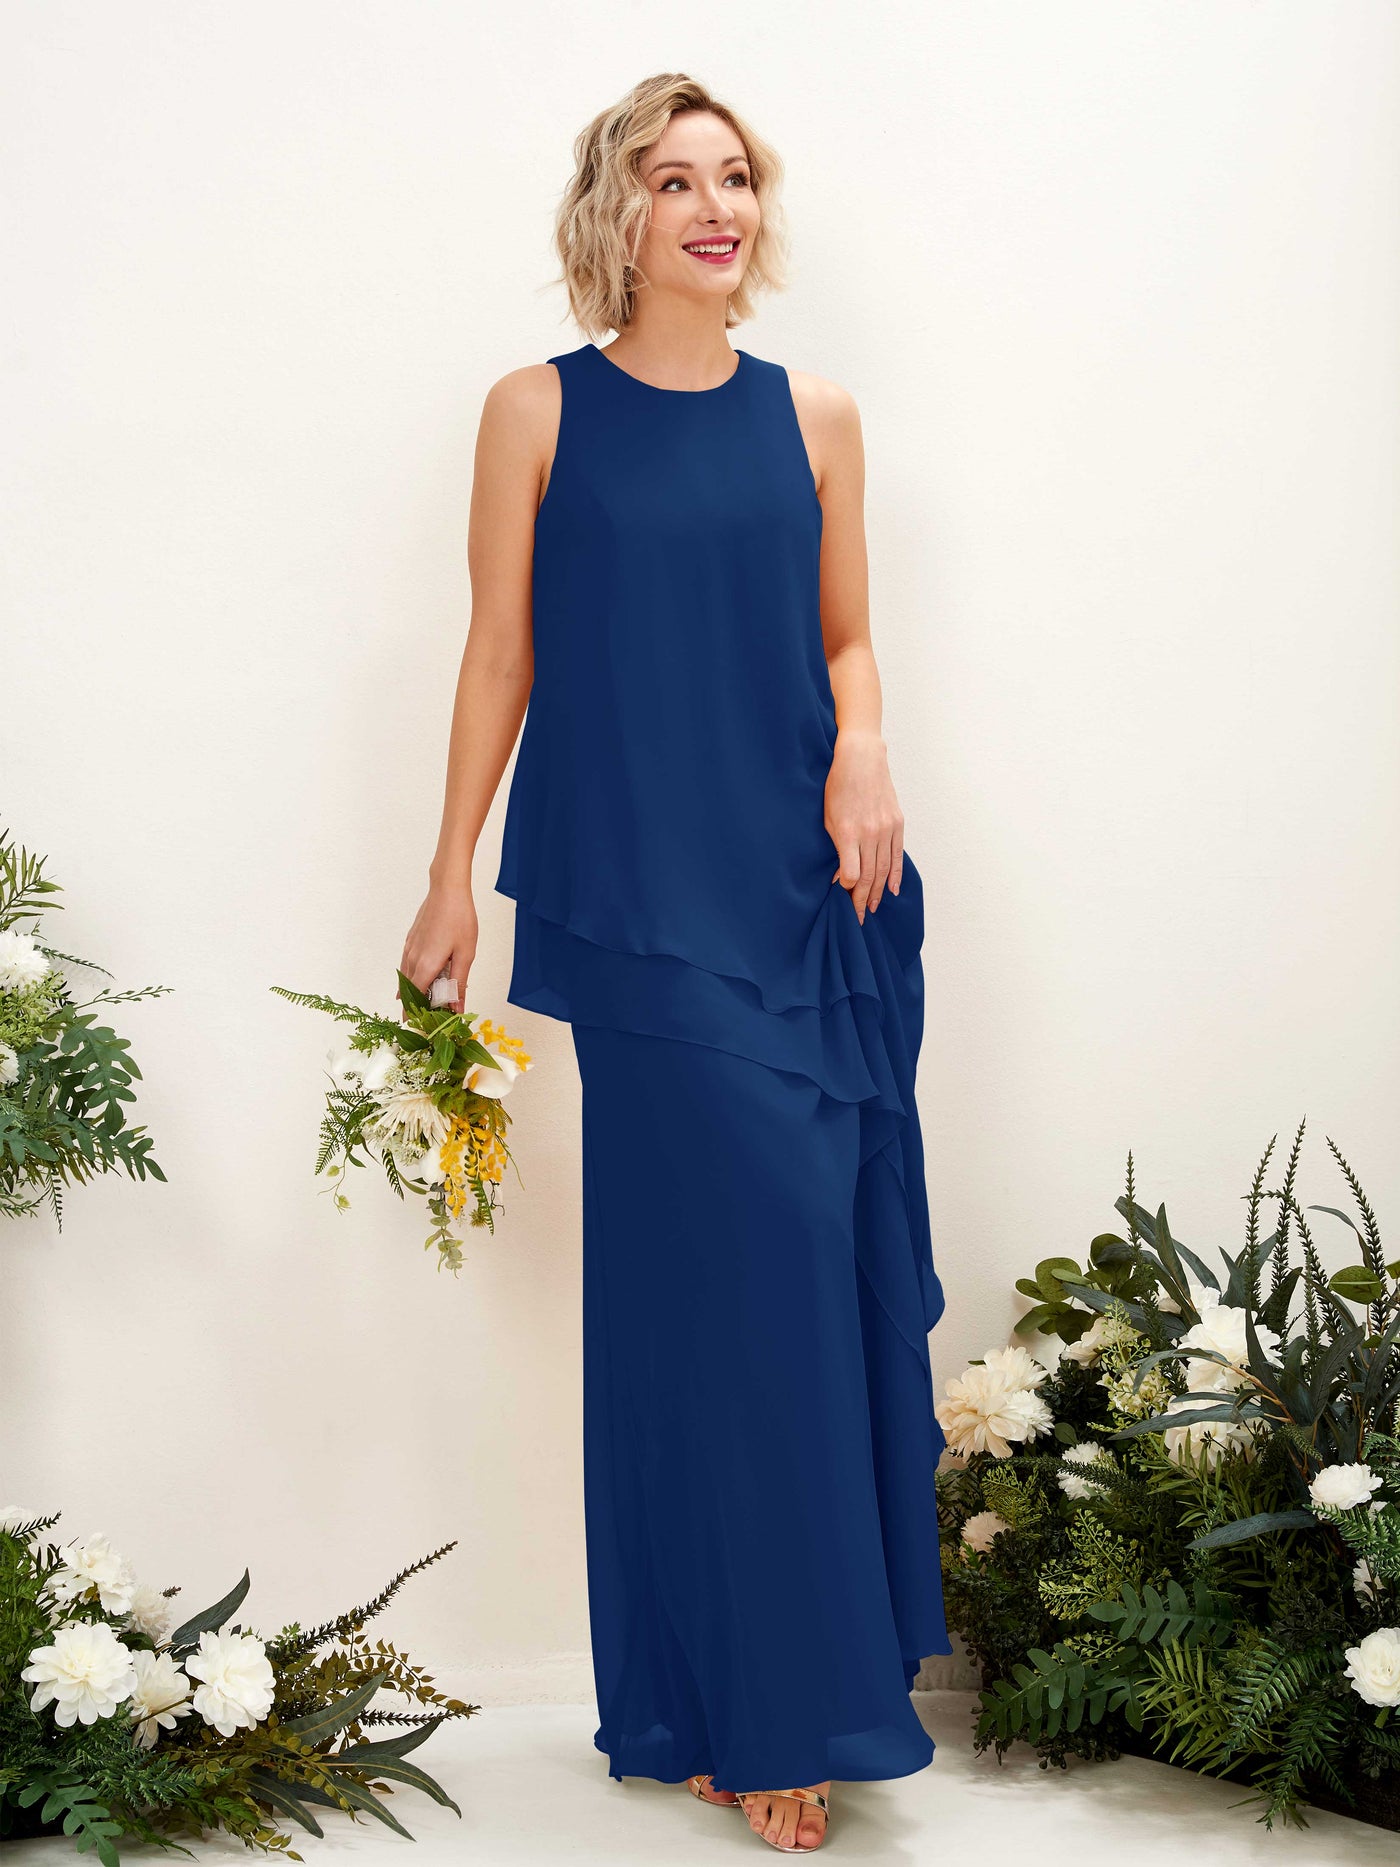 Round Sleeveless Chiffon Bridesmaid Dress - Royal Blue (81222337)#color_royal-blue